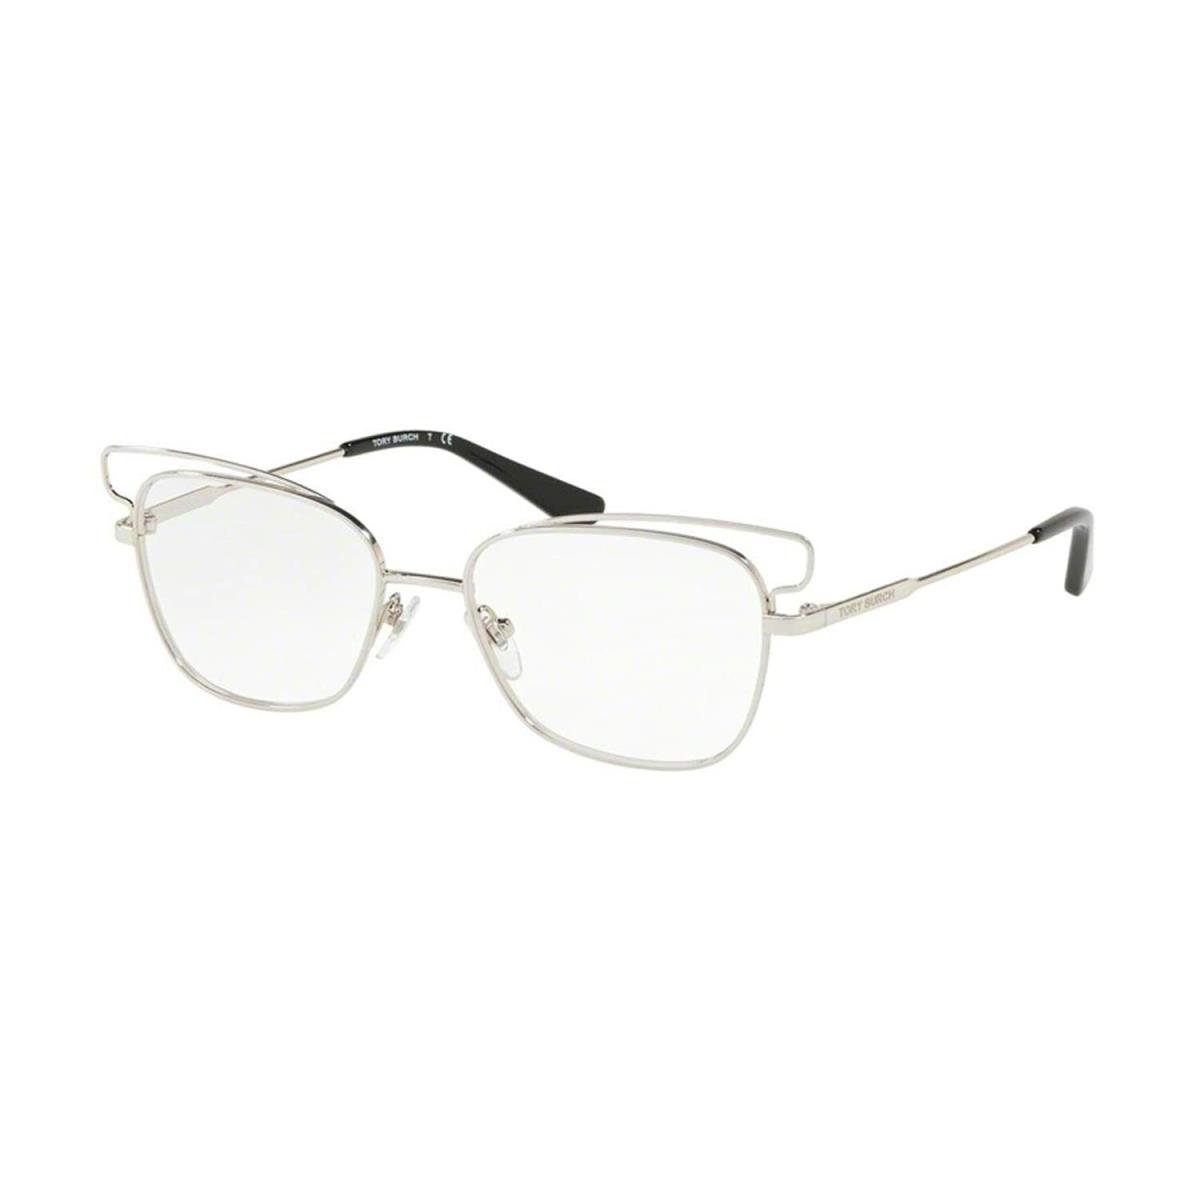 Tory Burch Eyeglasses TY1056 3161 Shiny Silver W/ Demo Lens 51MM